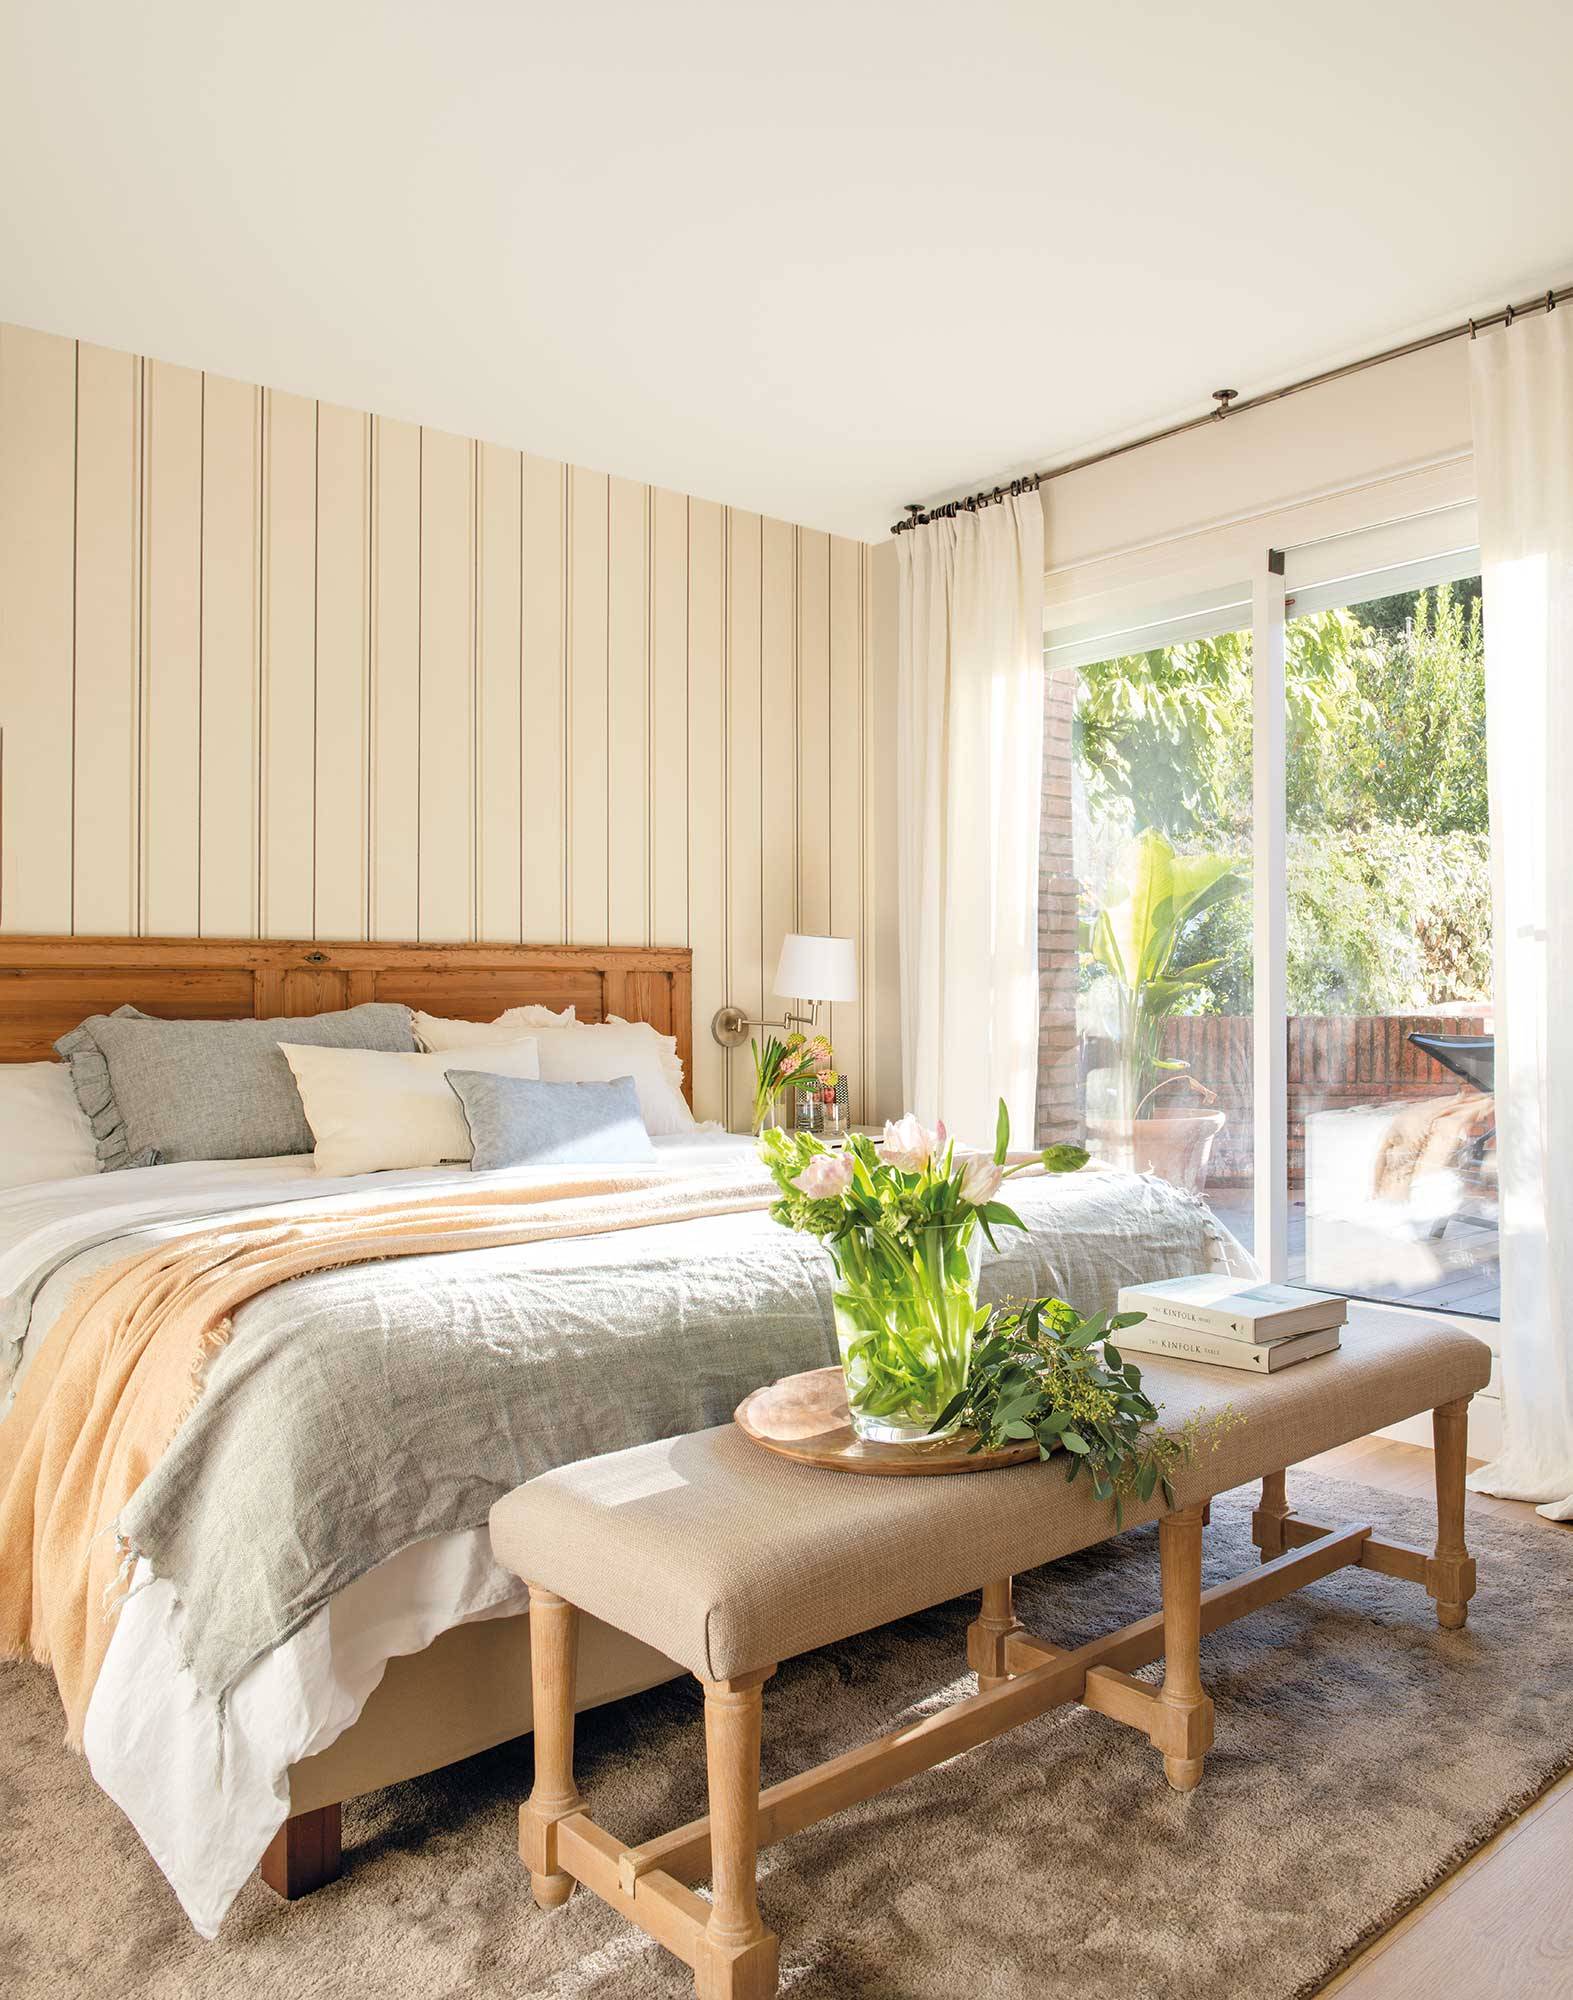 Dormitorio con papel a rayas en la pared y cabecero de madera 00536935